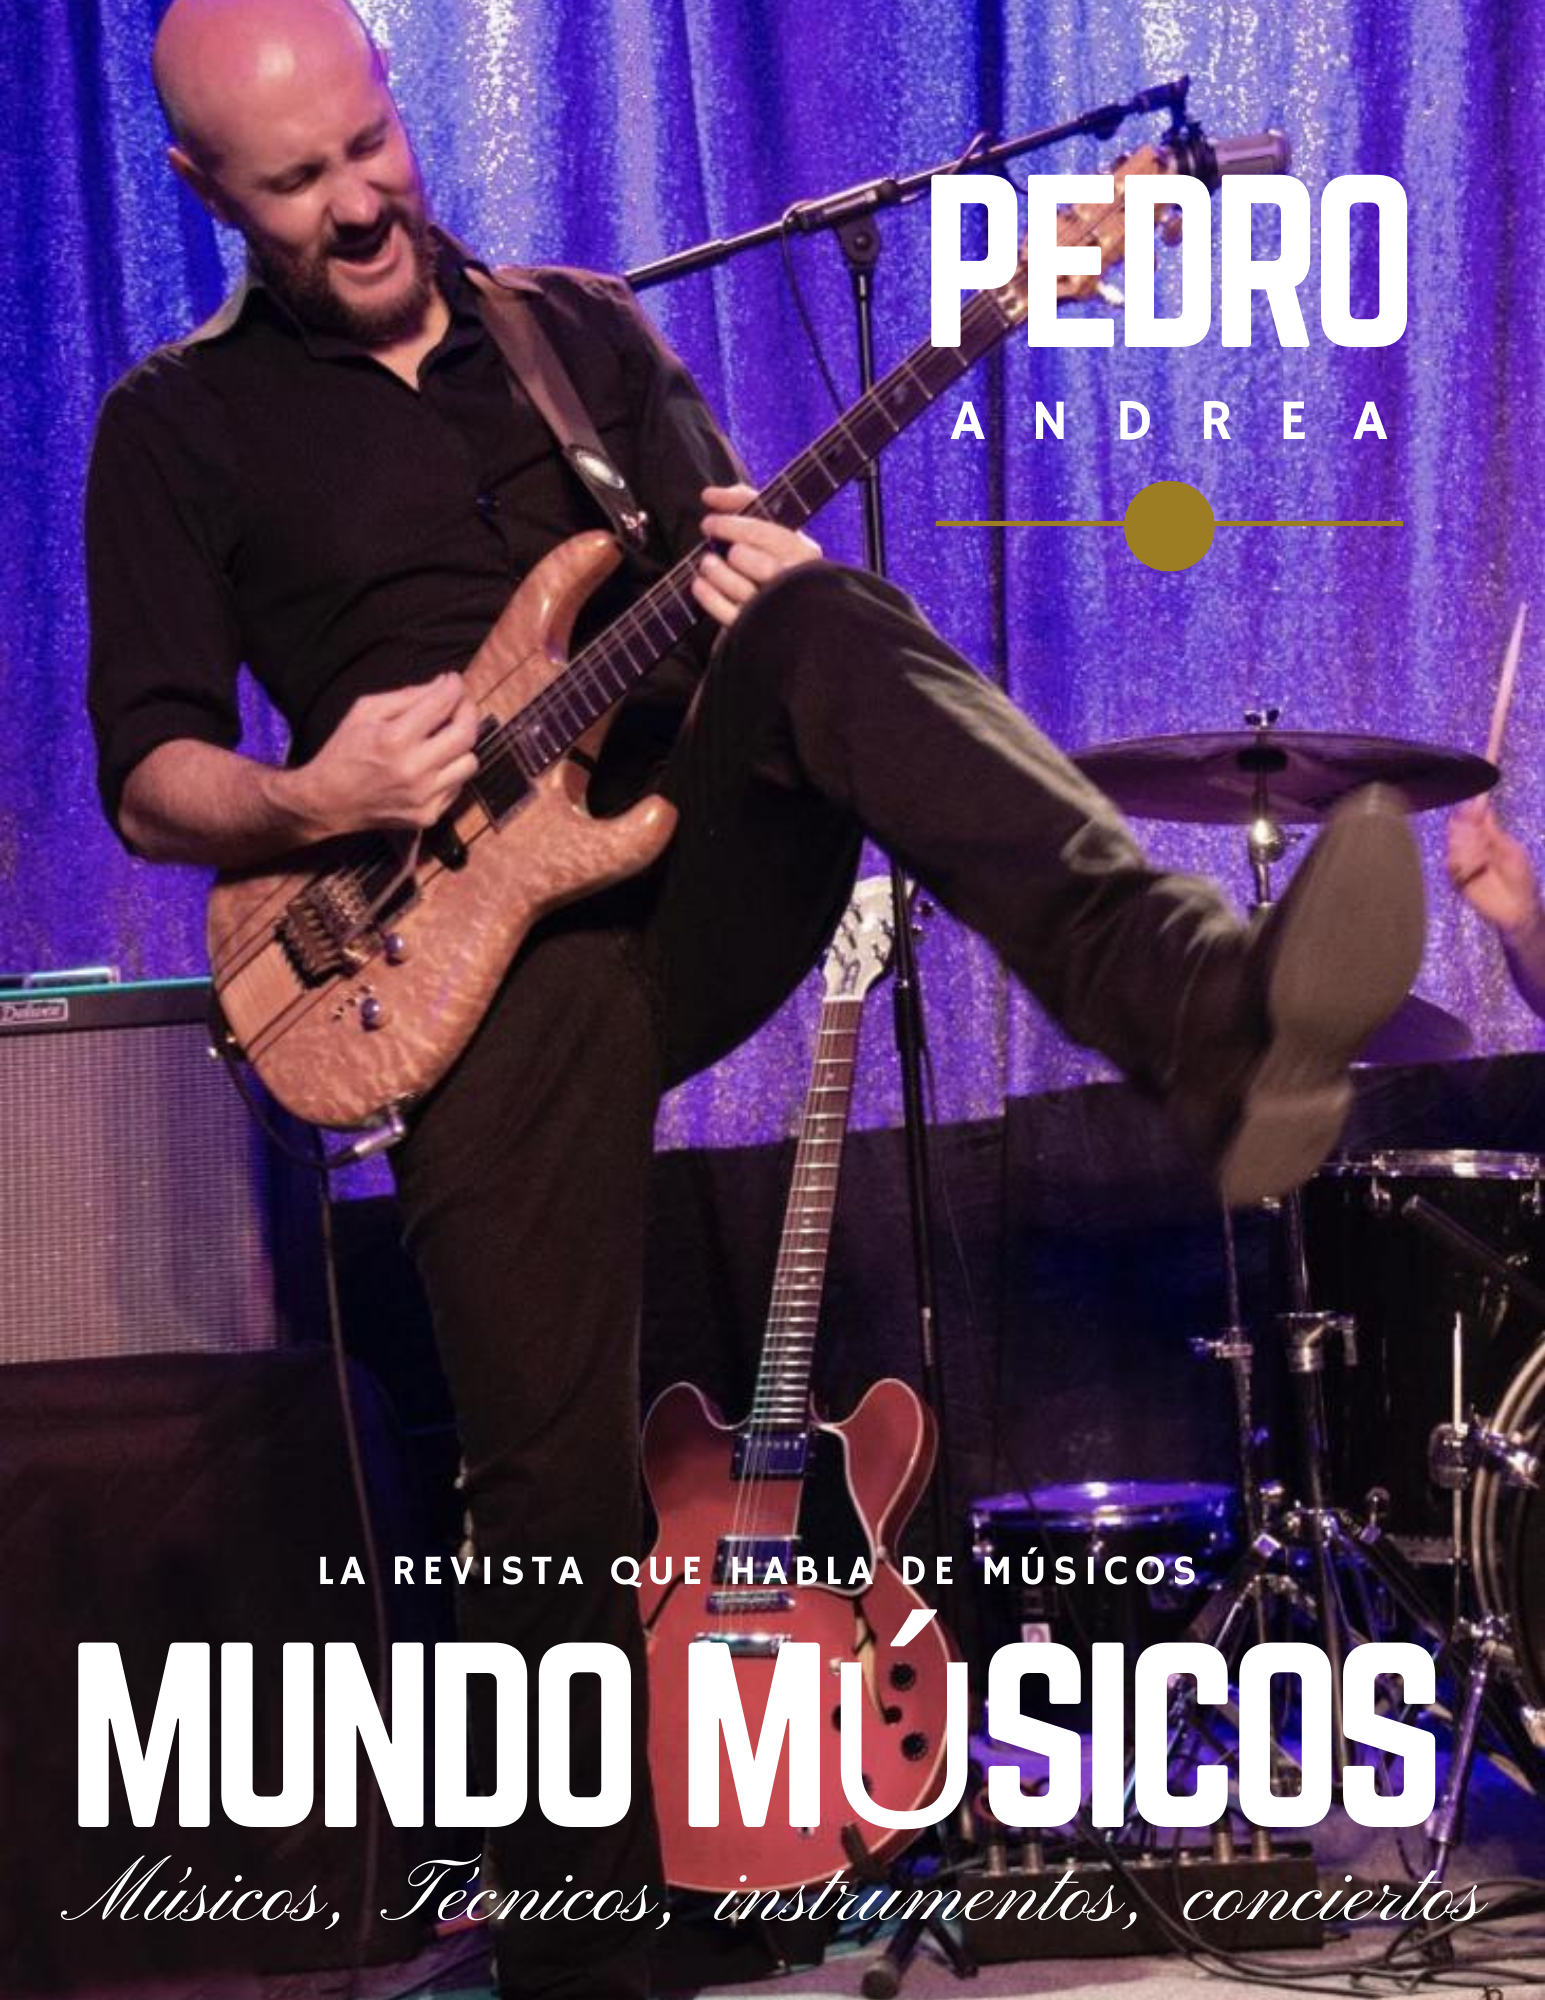 Pedro Andrea guitarrista, productor y compositor «Para mí la música es una historia de amor»